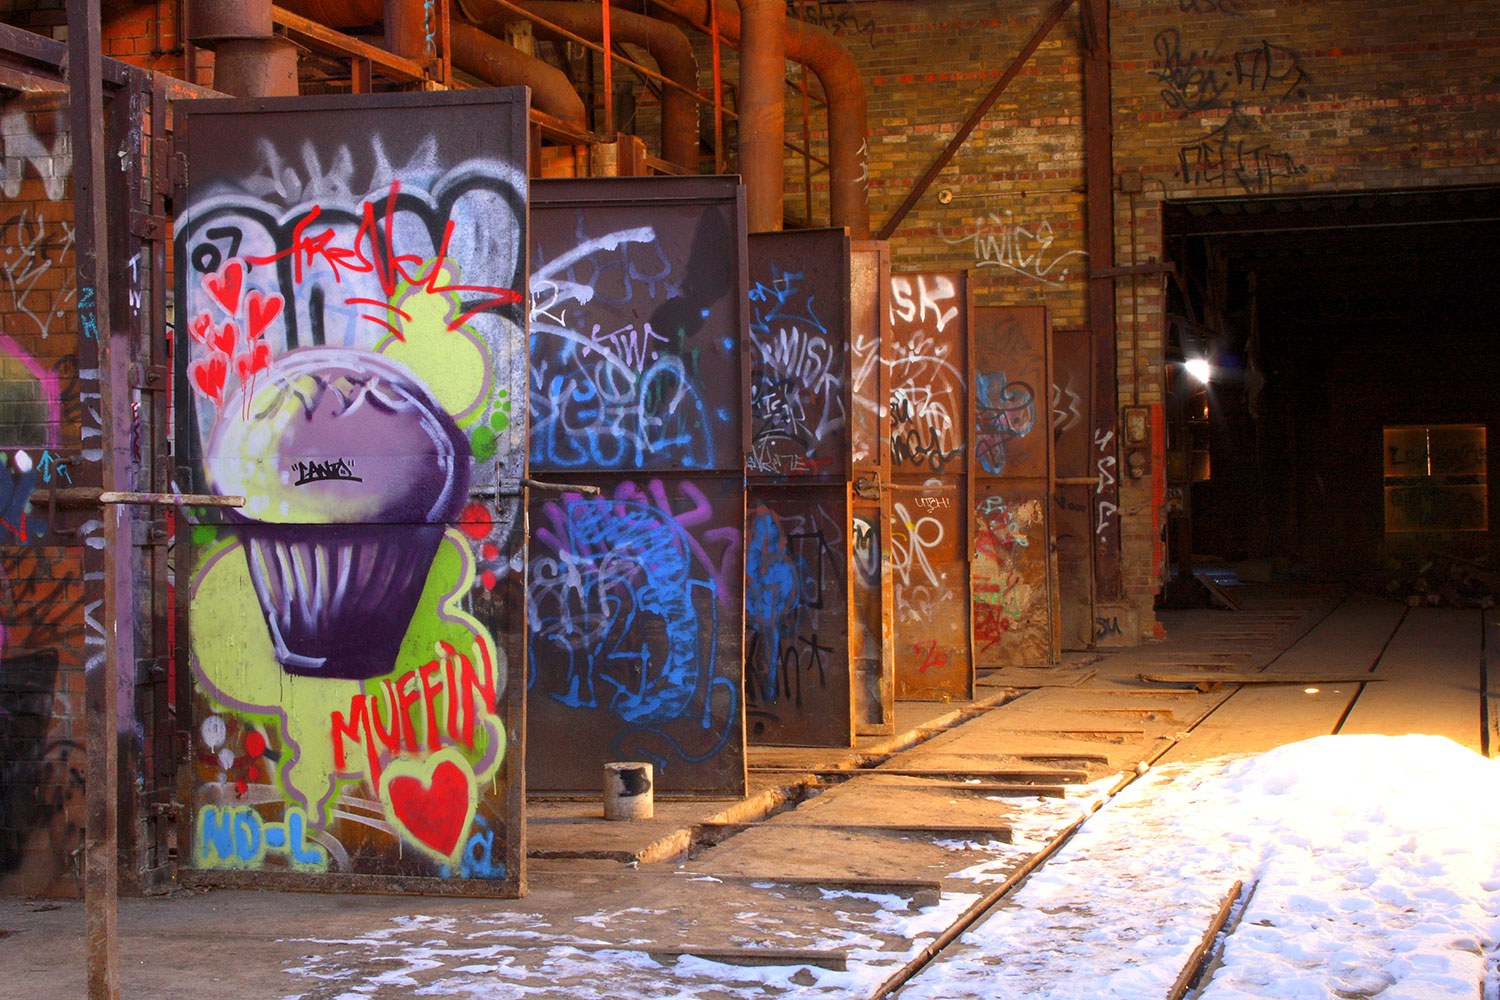 Mur après mur, four après four, on trouve des milliers de graffitis artistiques de types, styles et techniques différents à Evergreen Brick Works, certains datant du début des années 1980 (Photo : Michelle Scrivener)